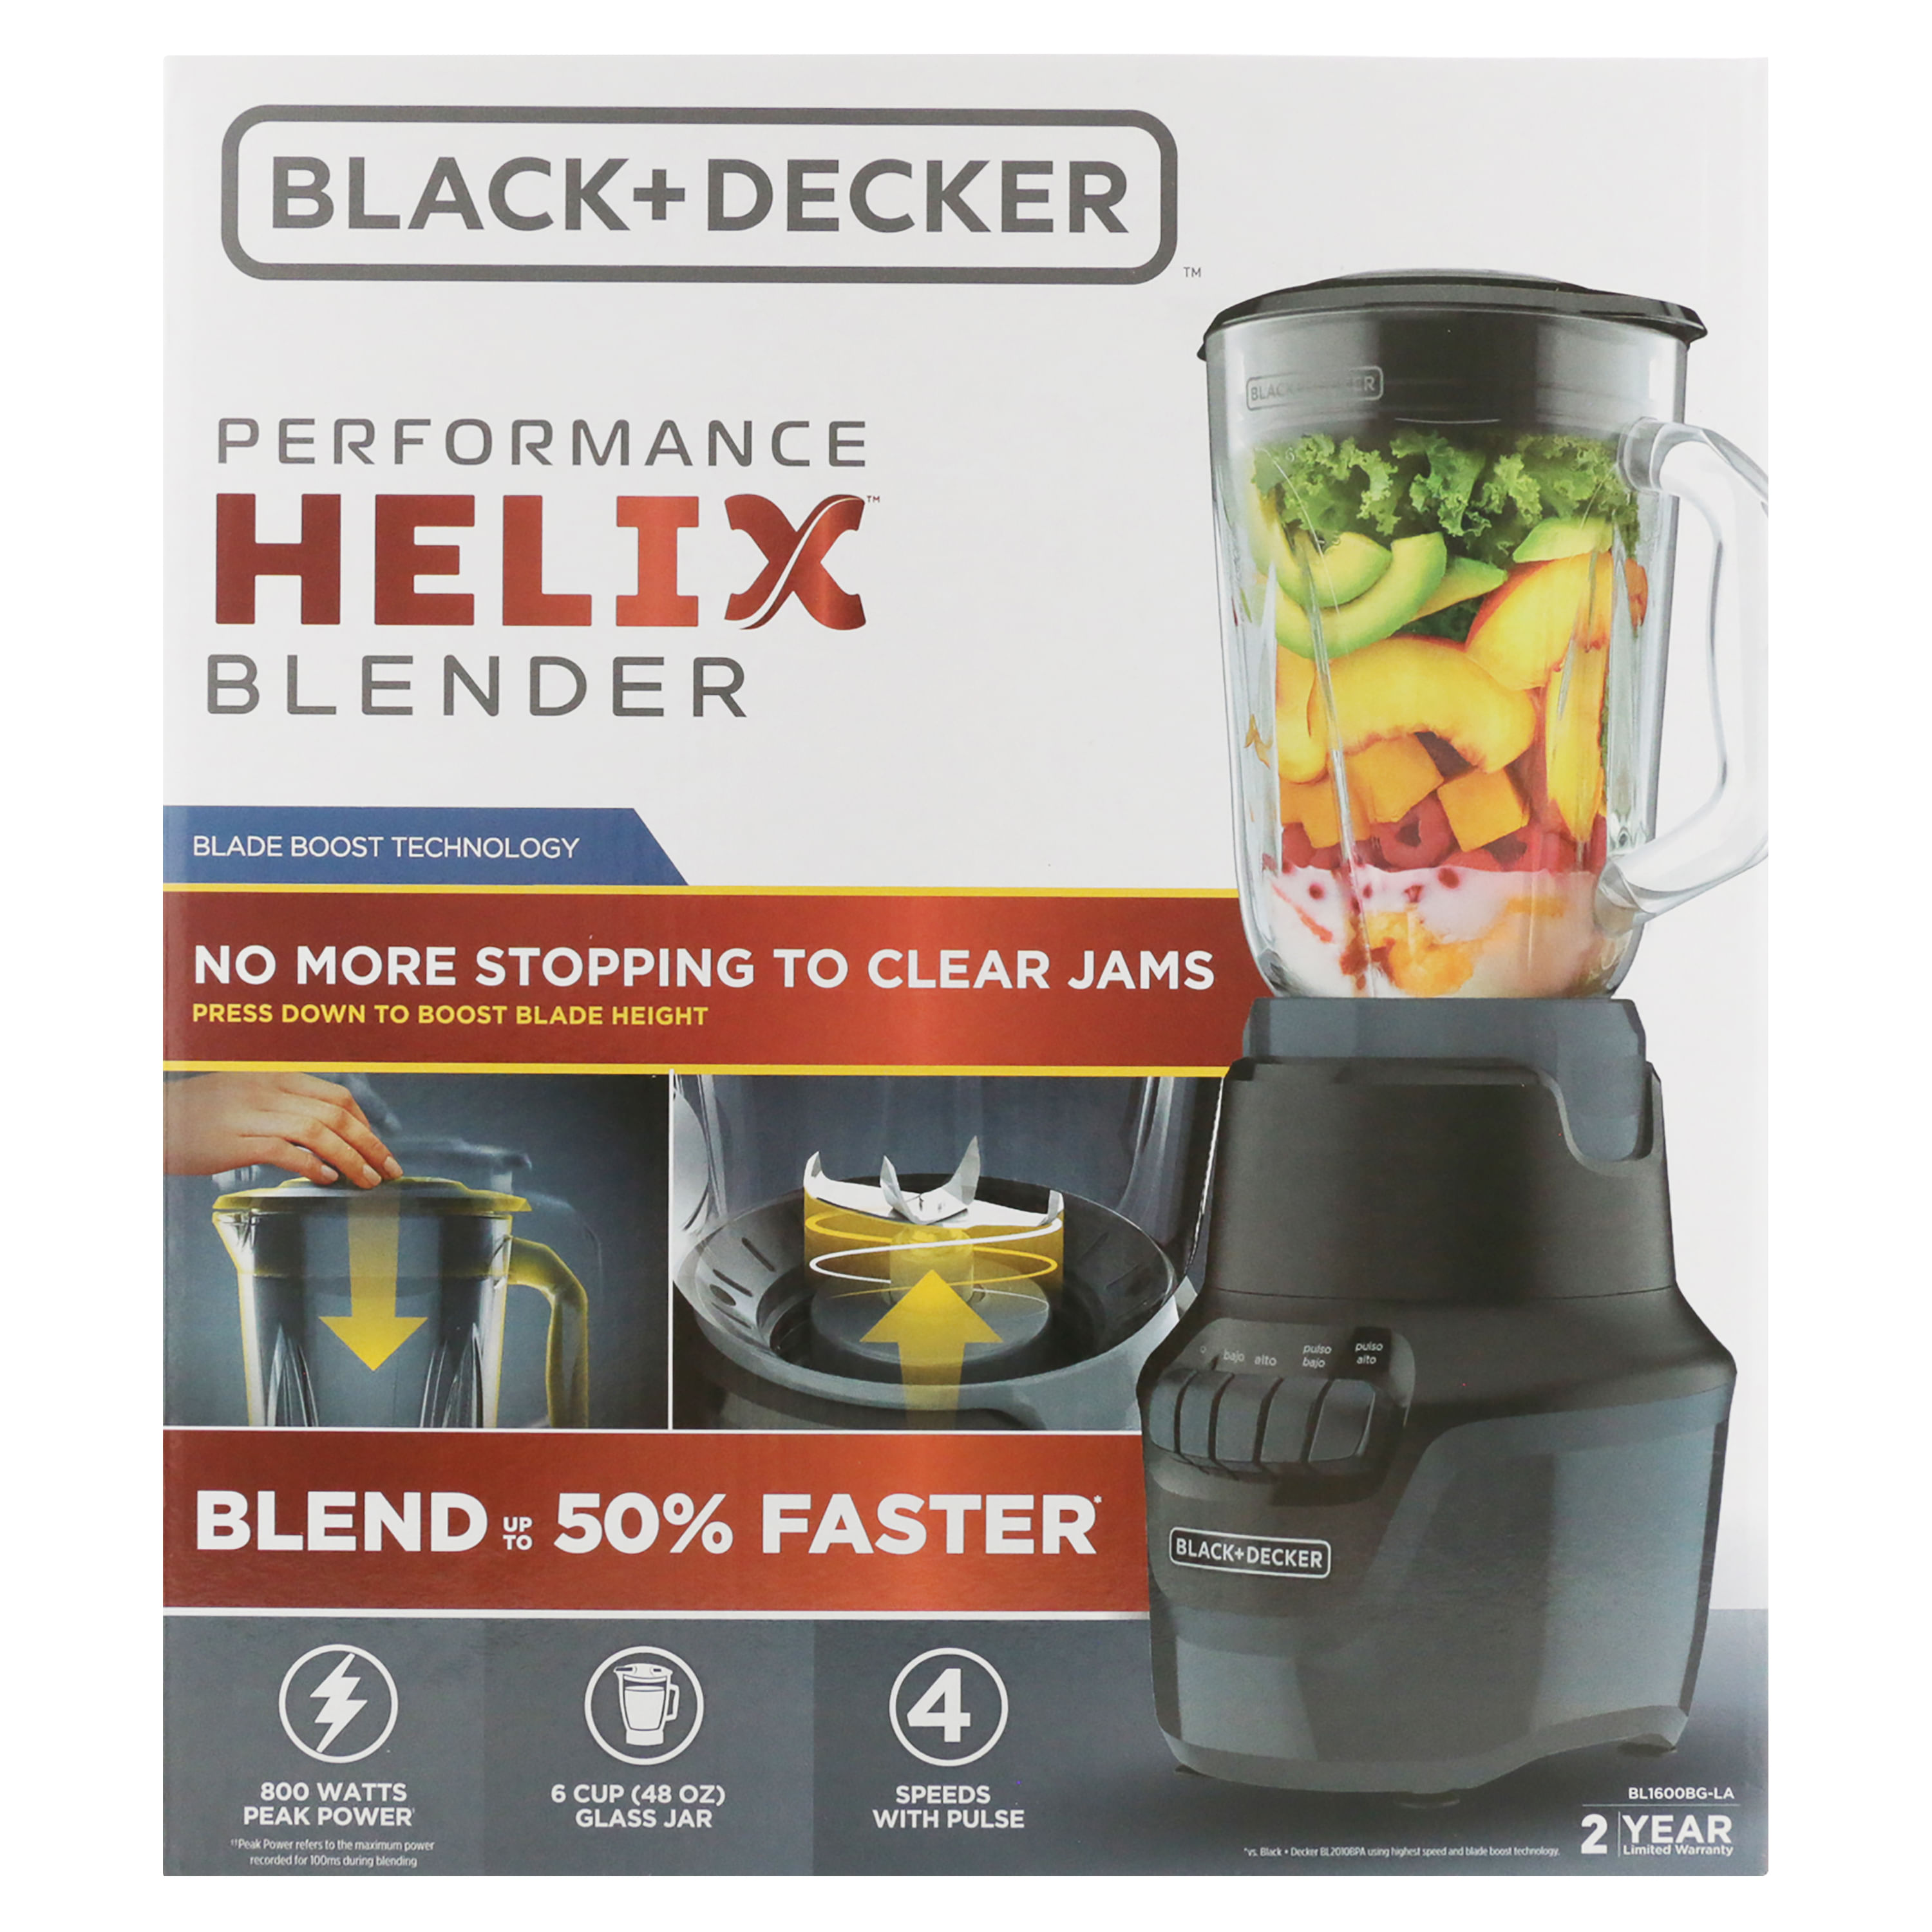 Black+decker Performance Helix Blender, BL1600BG-1